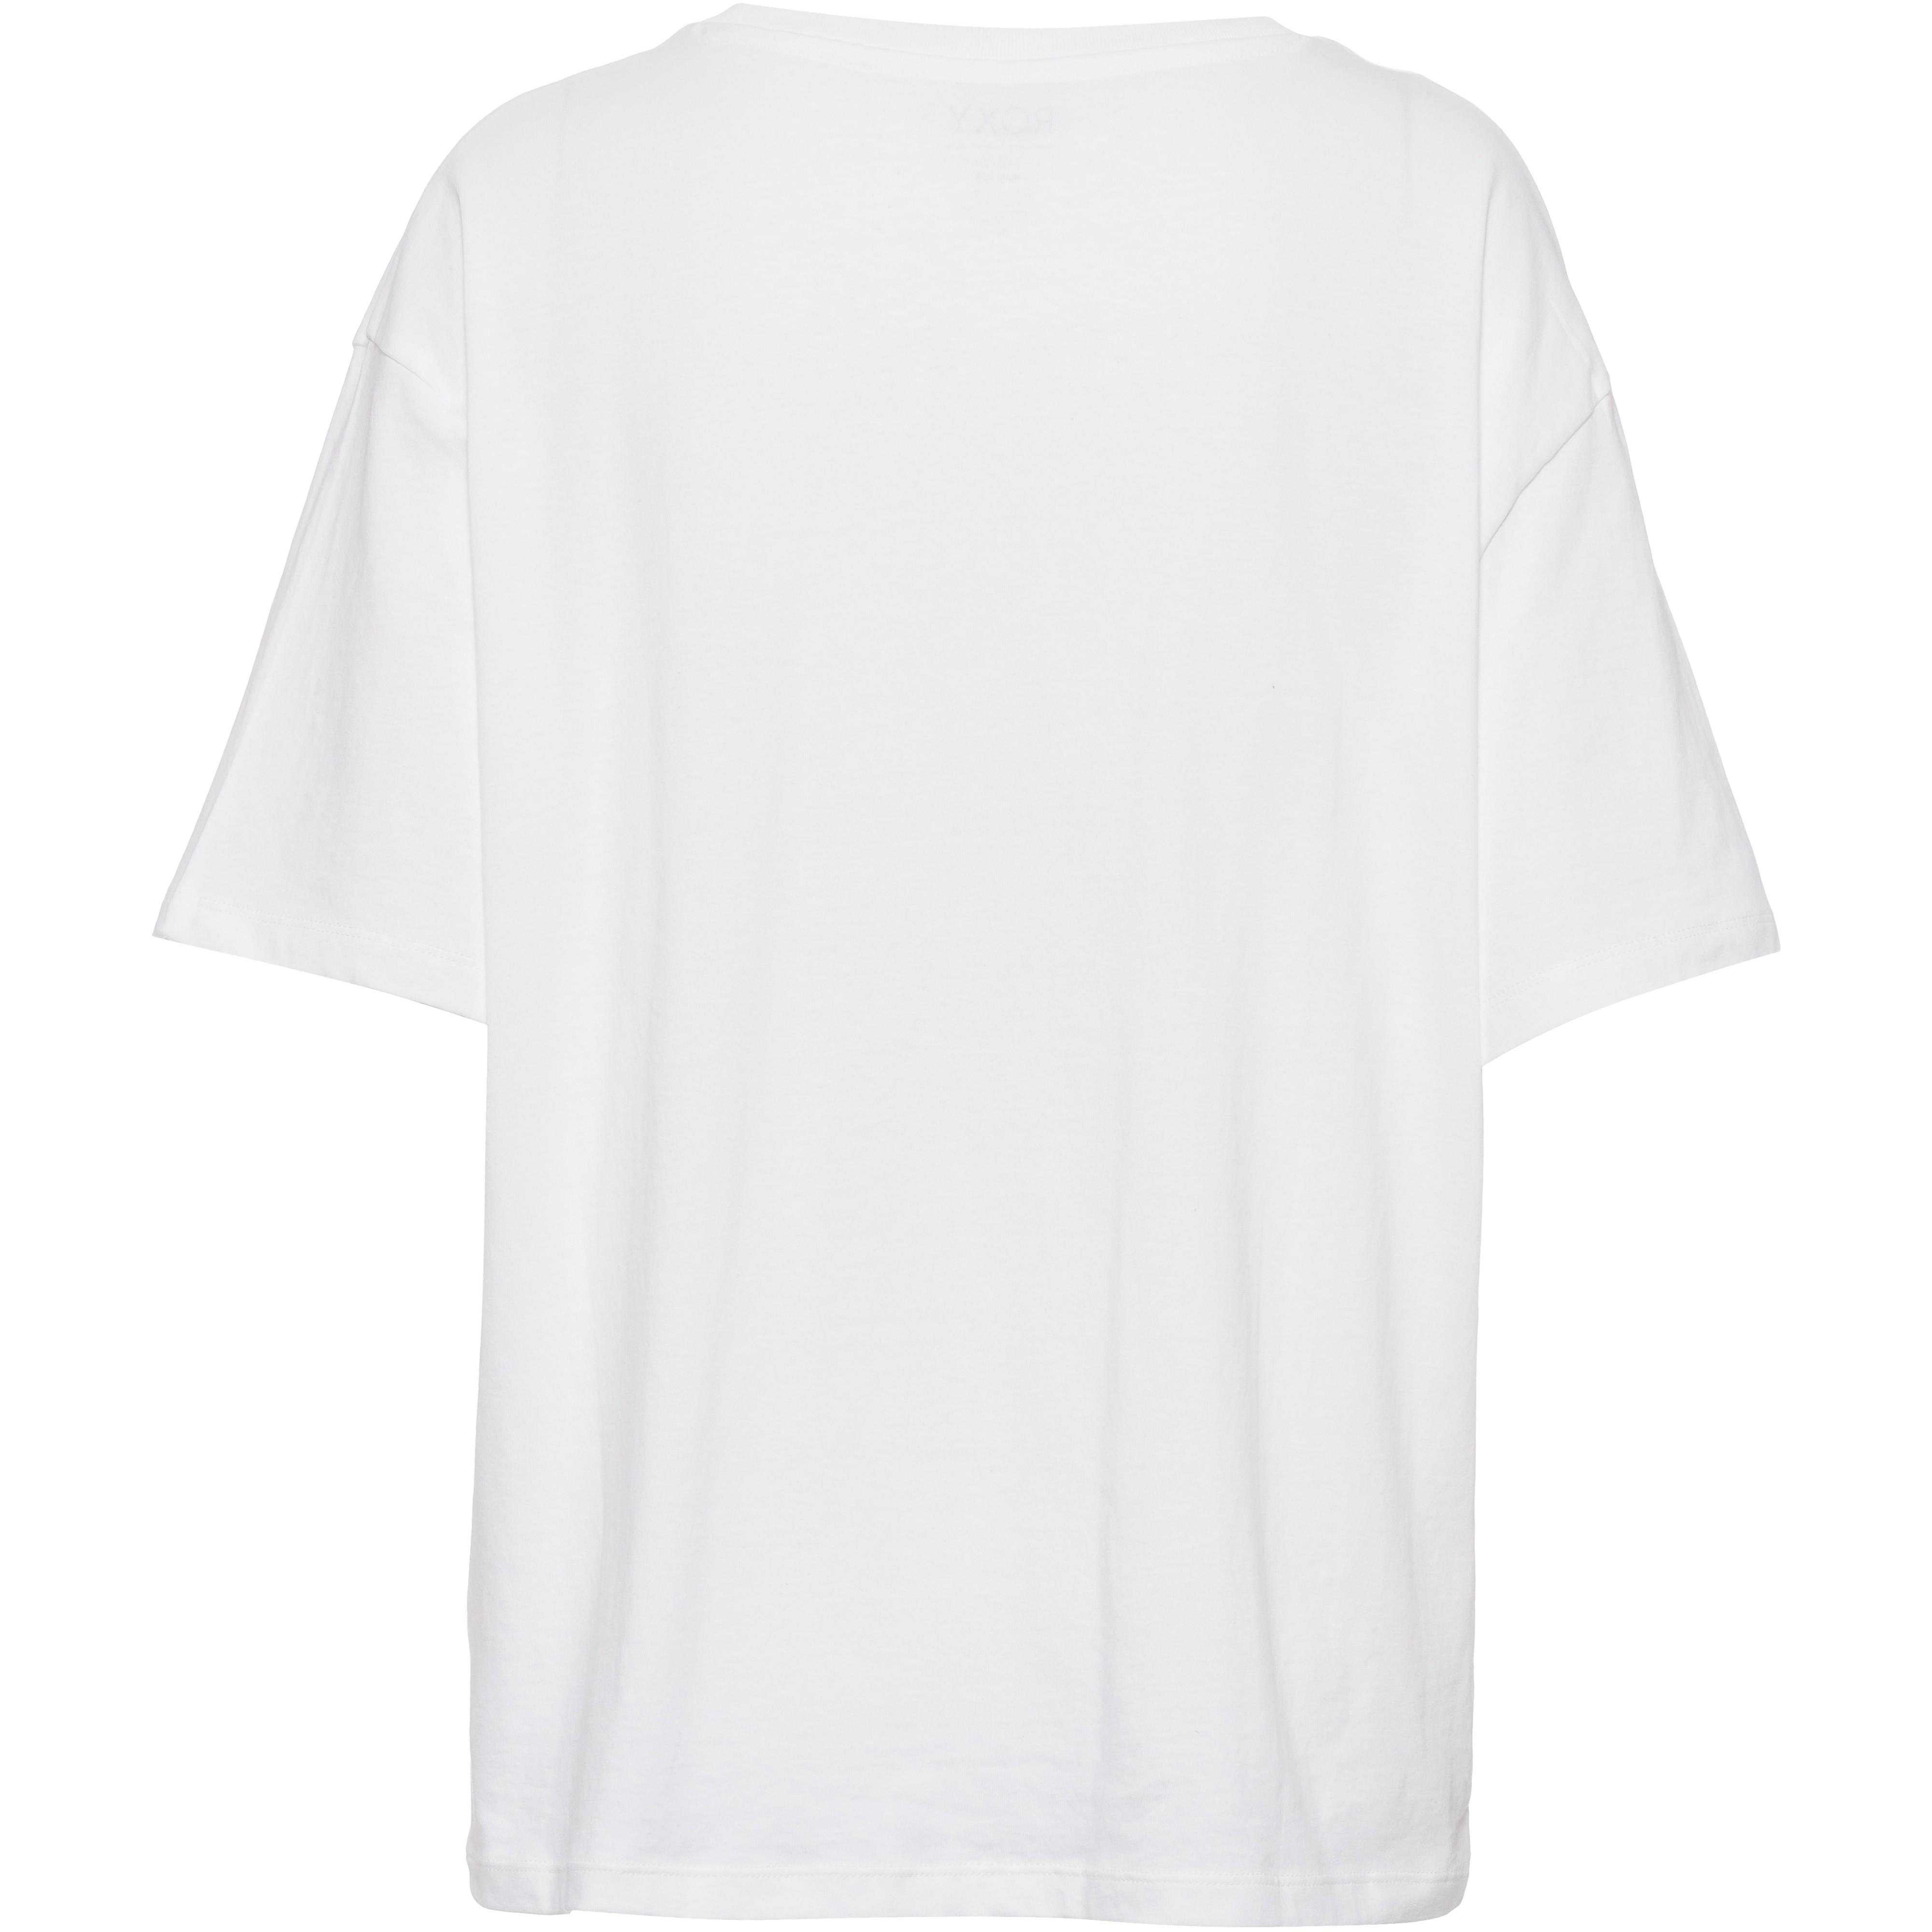 snow Online SportScheck Sand Shop kaufen von Damen under Roxy T-Shirt the Sky im white